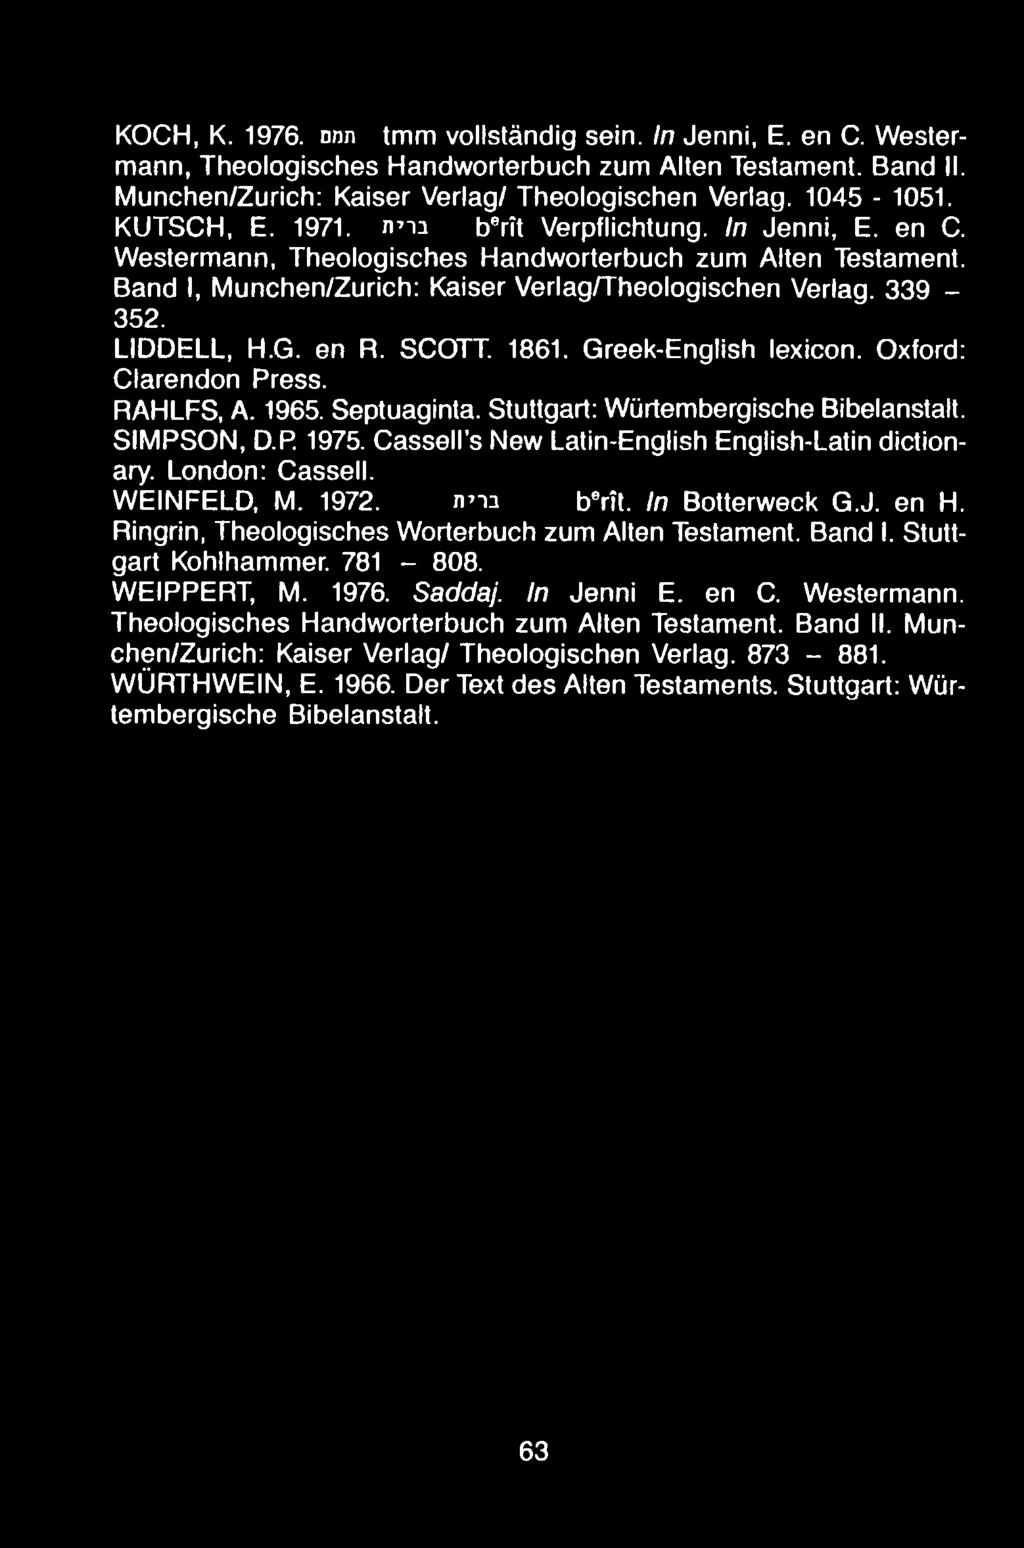 KOCH, K. 1976. nnn tmm vollstándig sein. In Jenni, E. en C. Westermann, Theologisches Handworterbuch zum Alien Testament. Band II. Munchen/Zurich: Kaiser Verlag/ Theologischen Verlag. 1045-1051.